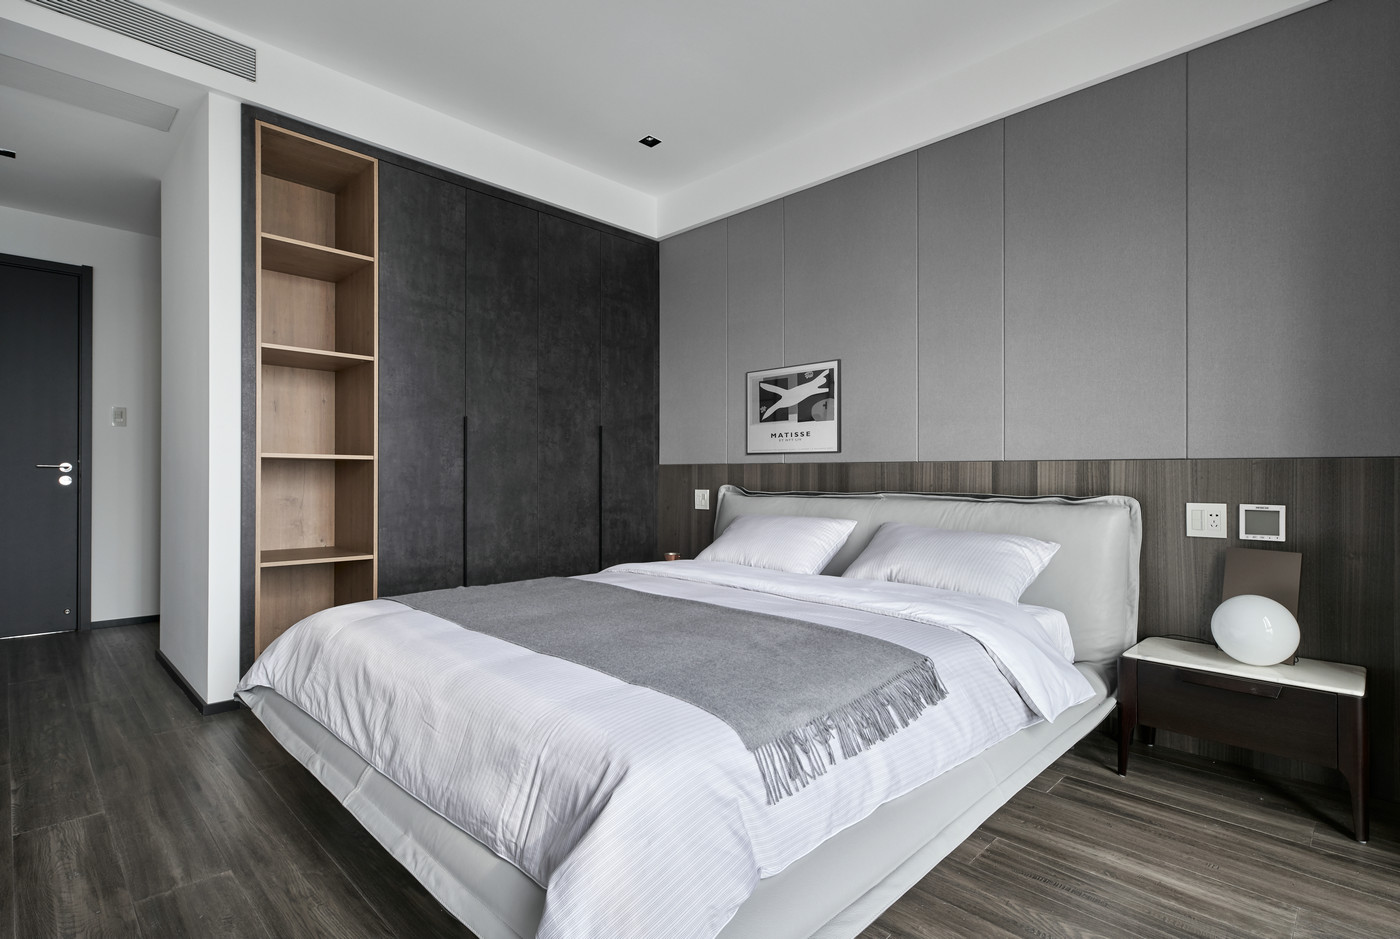 背景墙采用灰色调与木质分层设计，搭配深色衣柜饰面，体现出空间搭配的整体感。